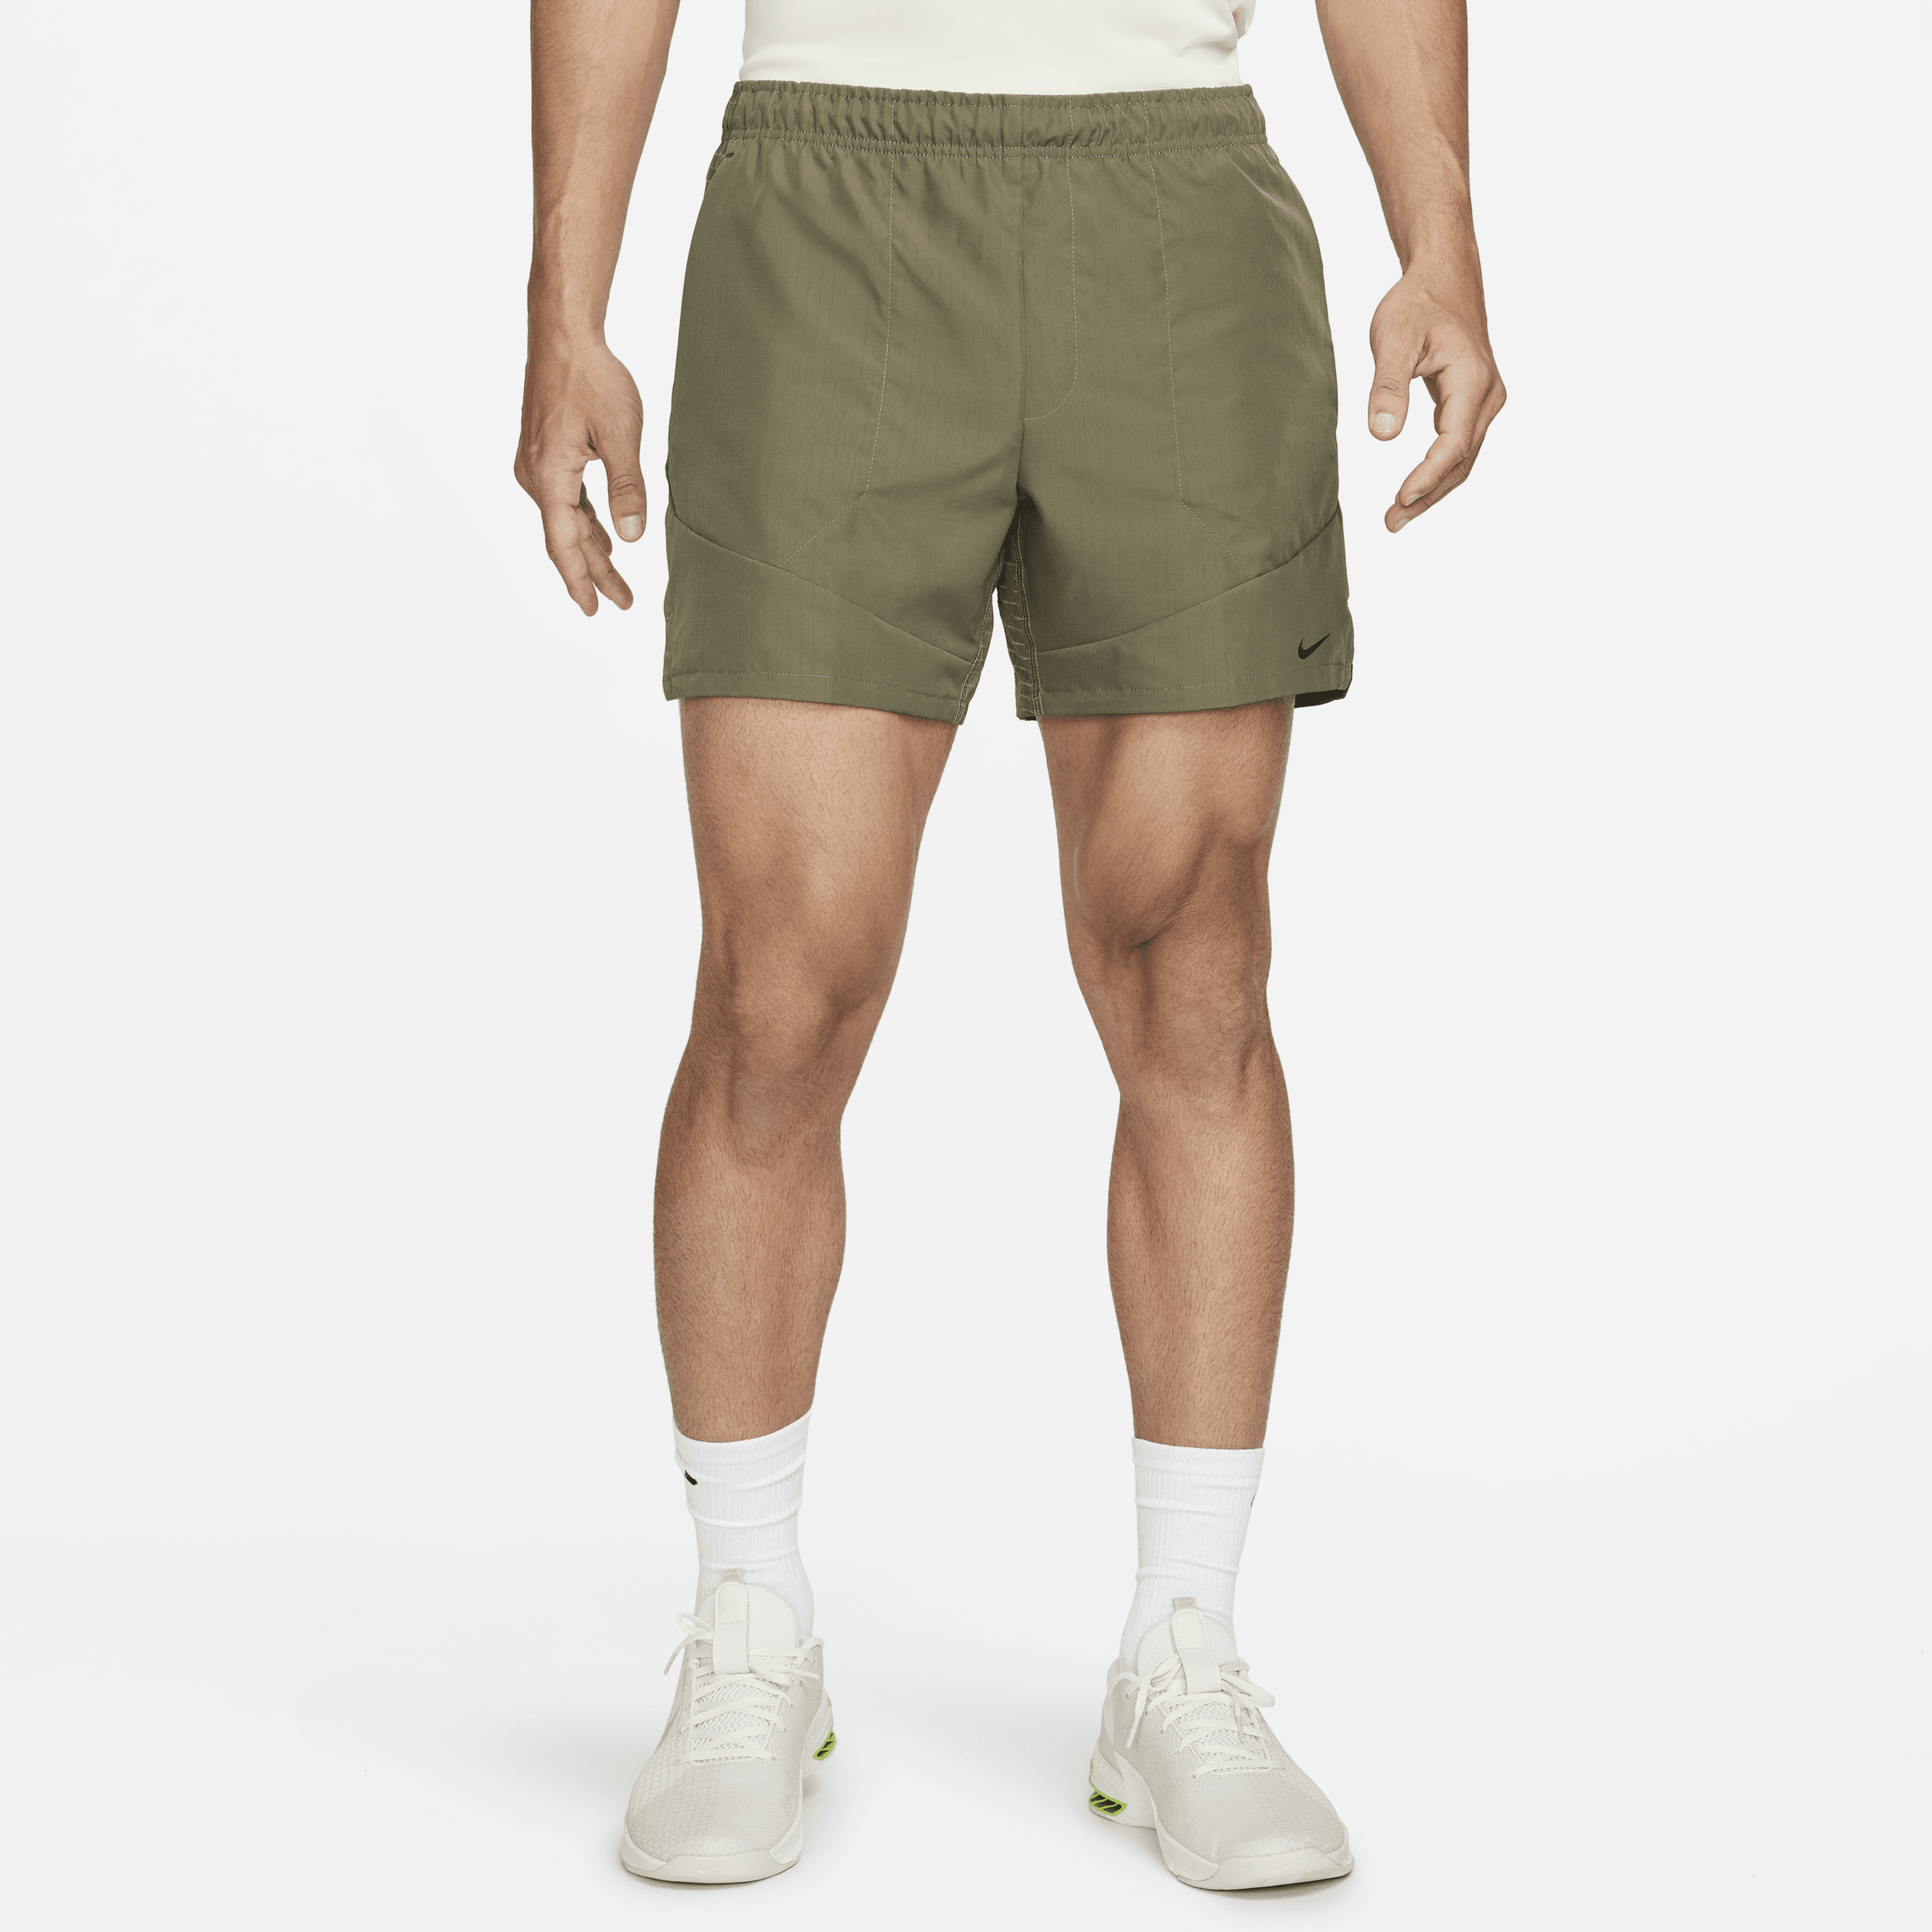 Nike Dri-FIT ADV A.P.S. Shorts versatili non foderati 15 cm – Uomo - Verde